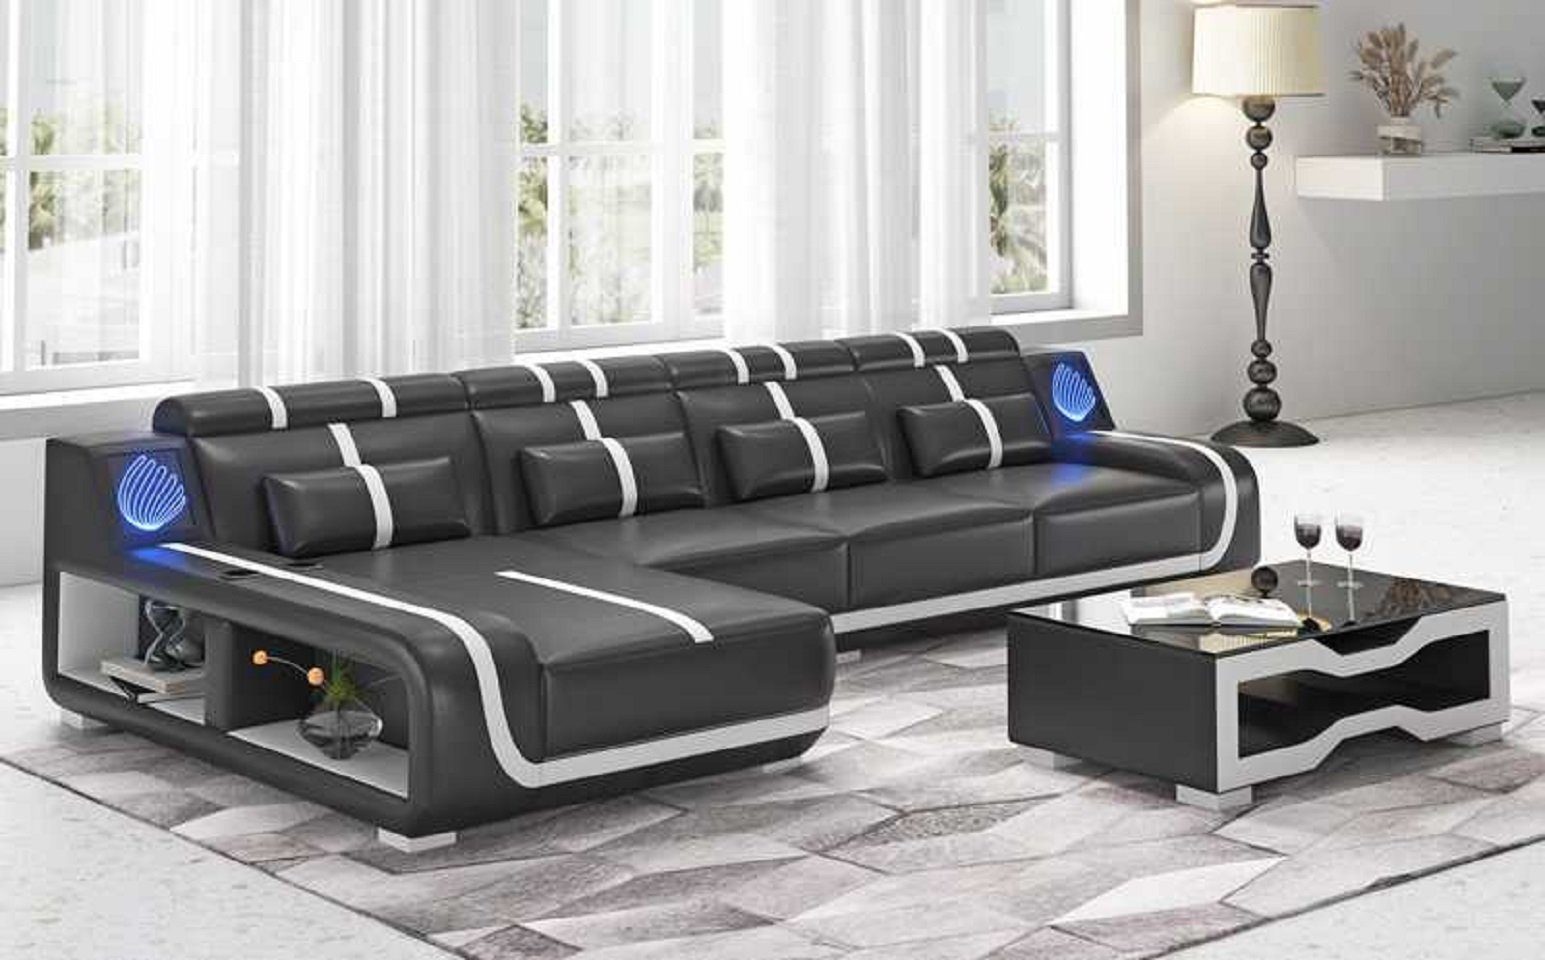 JVmoebel Ecksofa Design L in Europe Sofa 3 couchen, Form Made Liege Couch Teile, Ecksofa Modern Schwarz